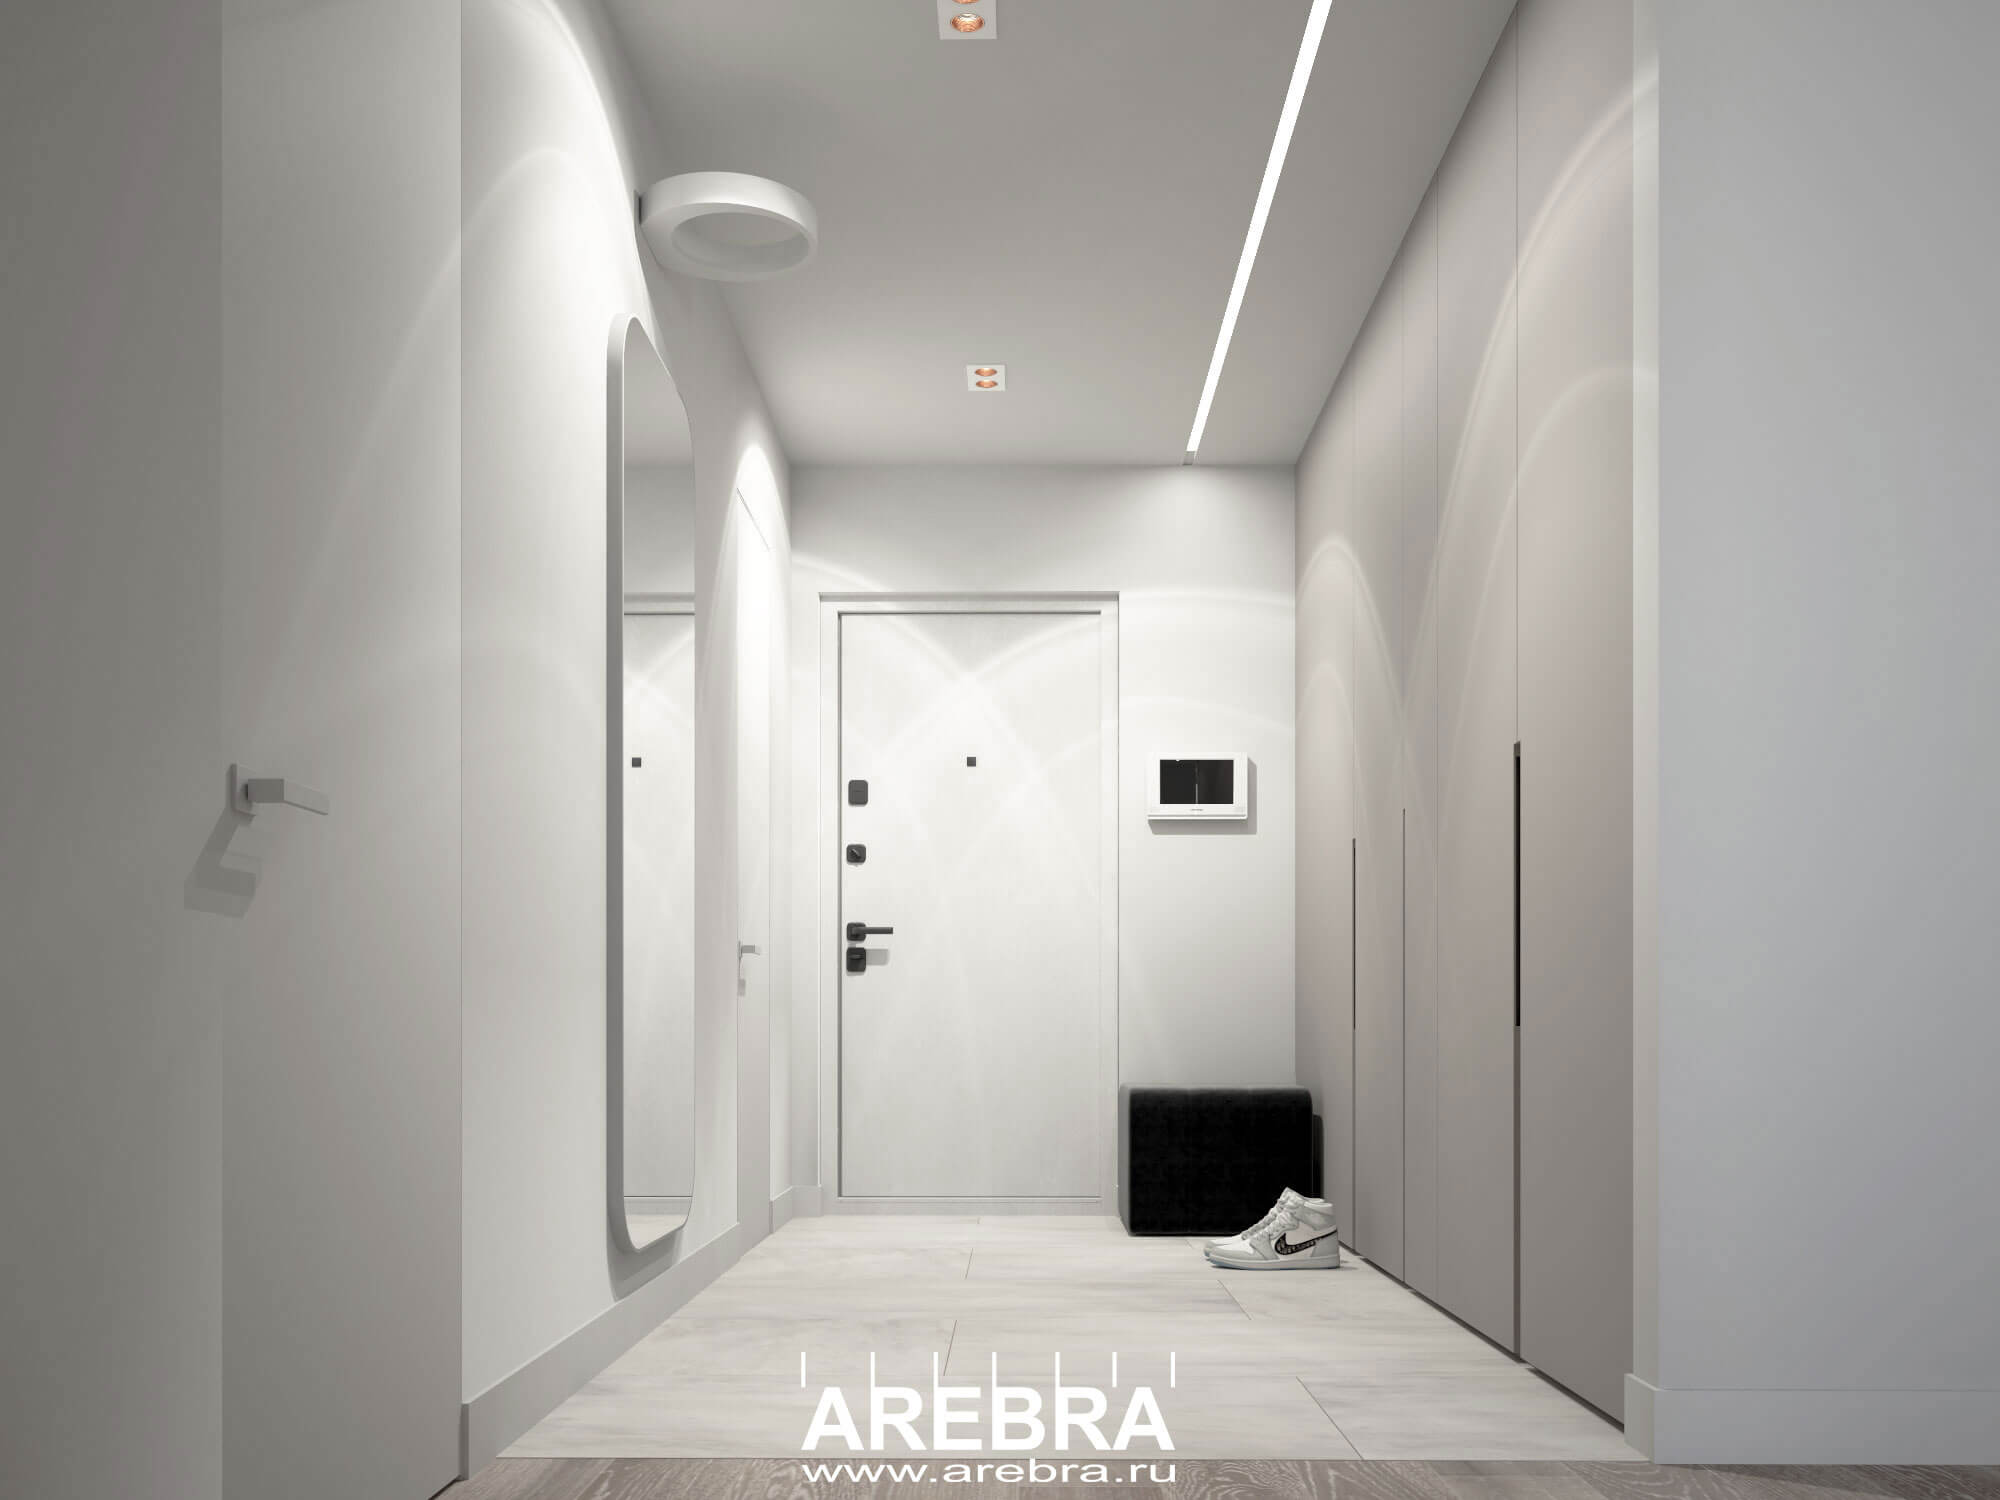 Дизайн проект интерьеров квартиры в ЖК Magnifika Residence (Магнифика Резиденс) общей площадью 65,4м2